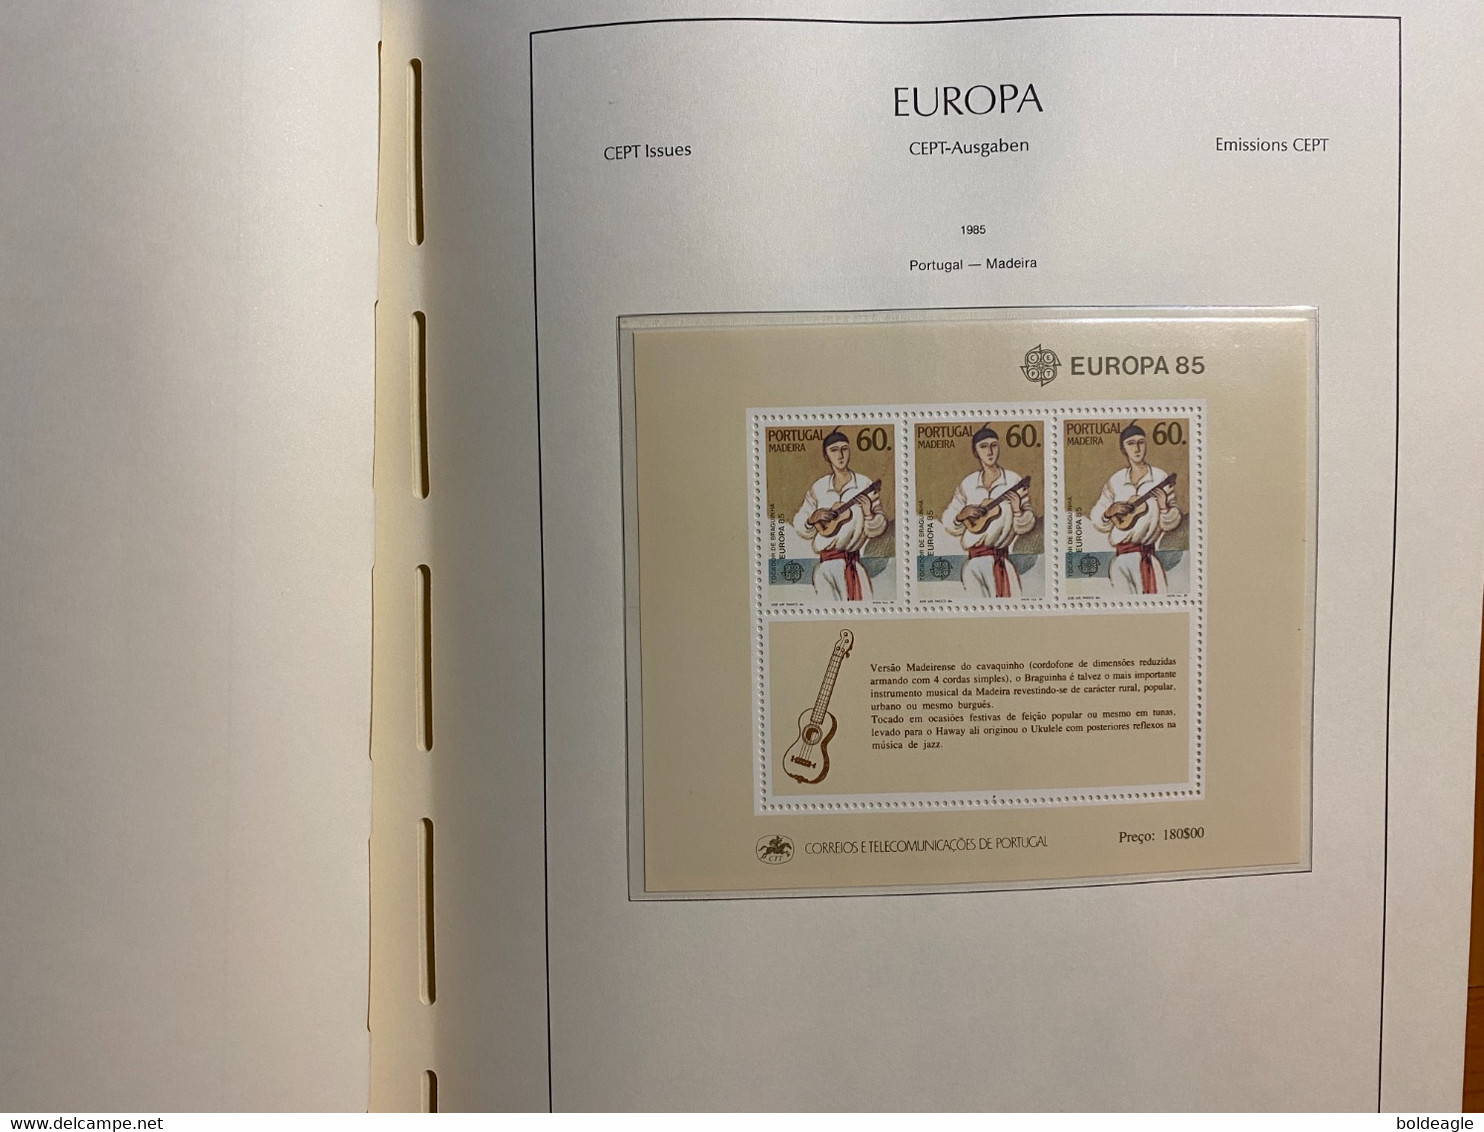 Europa -année complète 1985- 74 valeurs et 4 blocs  - neuf sans charnière LUXE